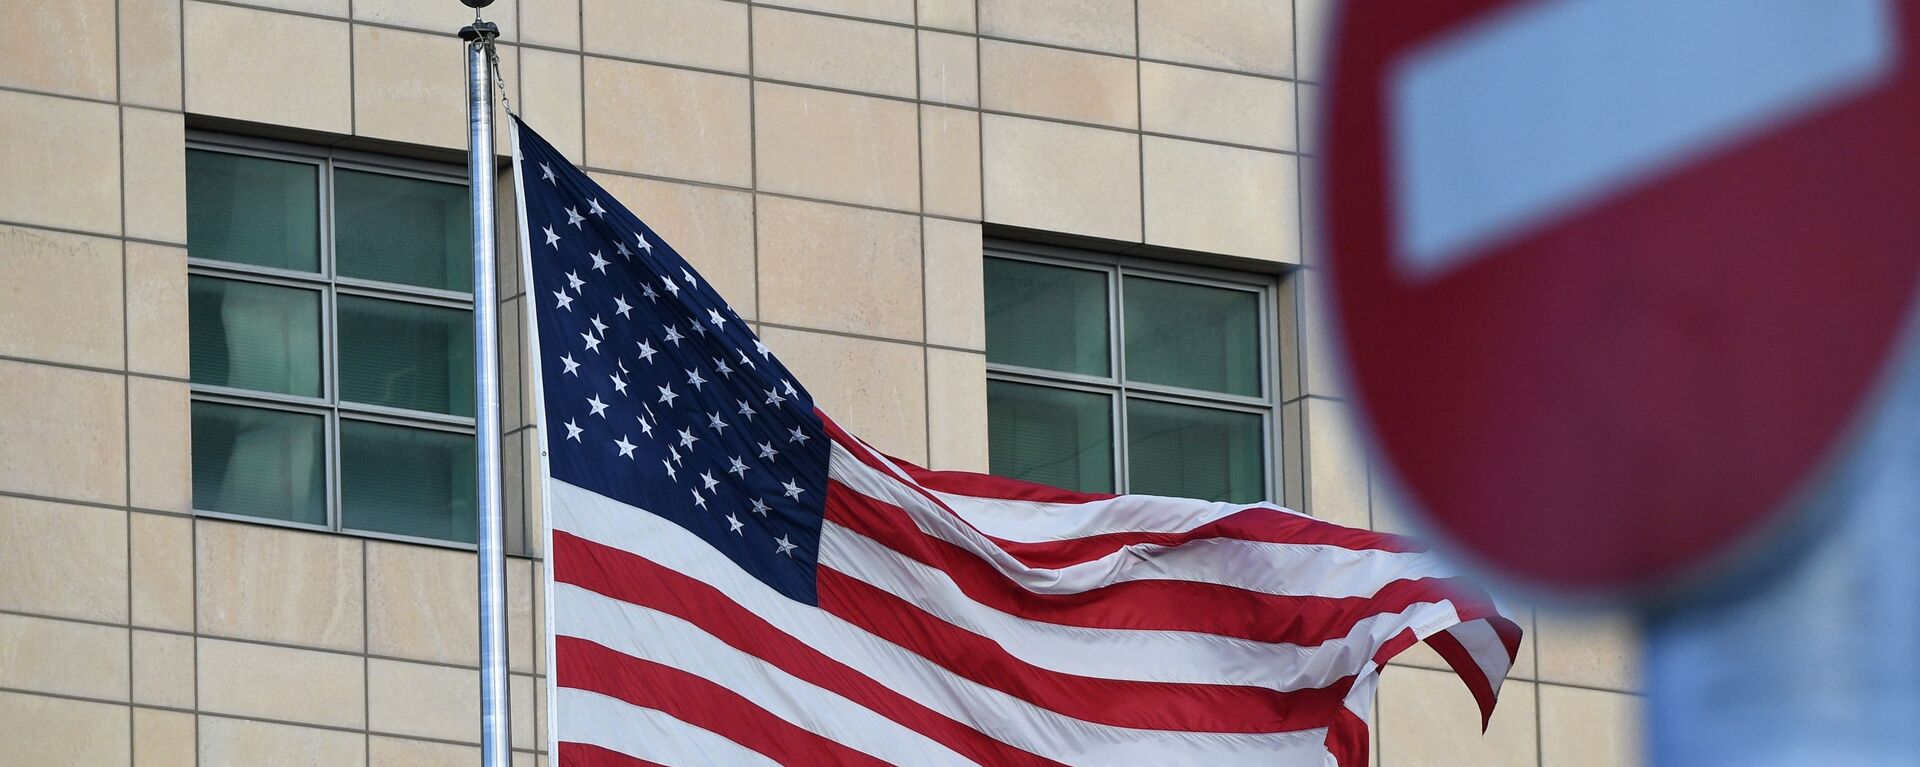 Государственный флаг США у американского посольства в Москве - Sputnik Латвия, 1920, 13.01.2022